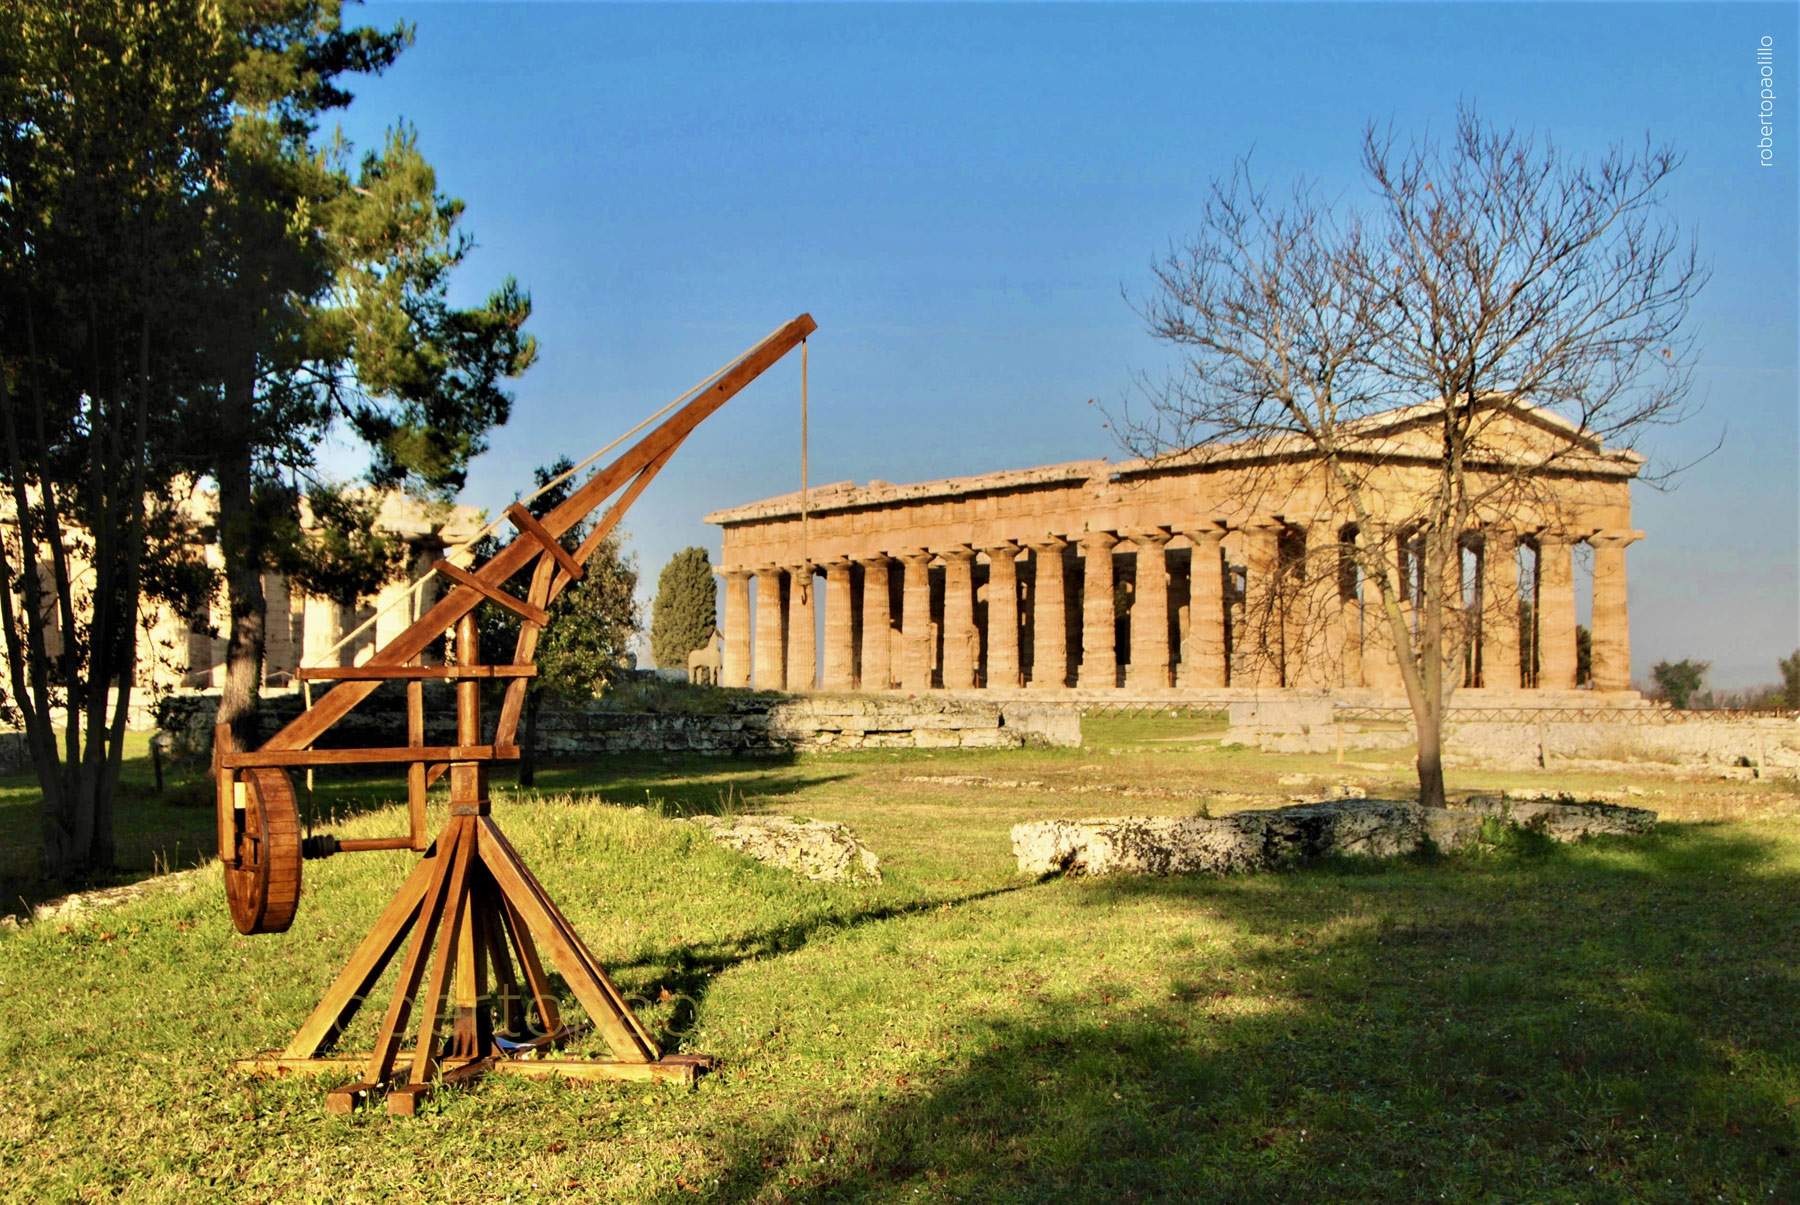 Al Parco Archeologico di Paestum nasce il Parco dei Piccoli, un parco giochi a tema archeologico vicino ai templi 